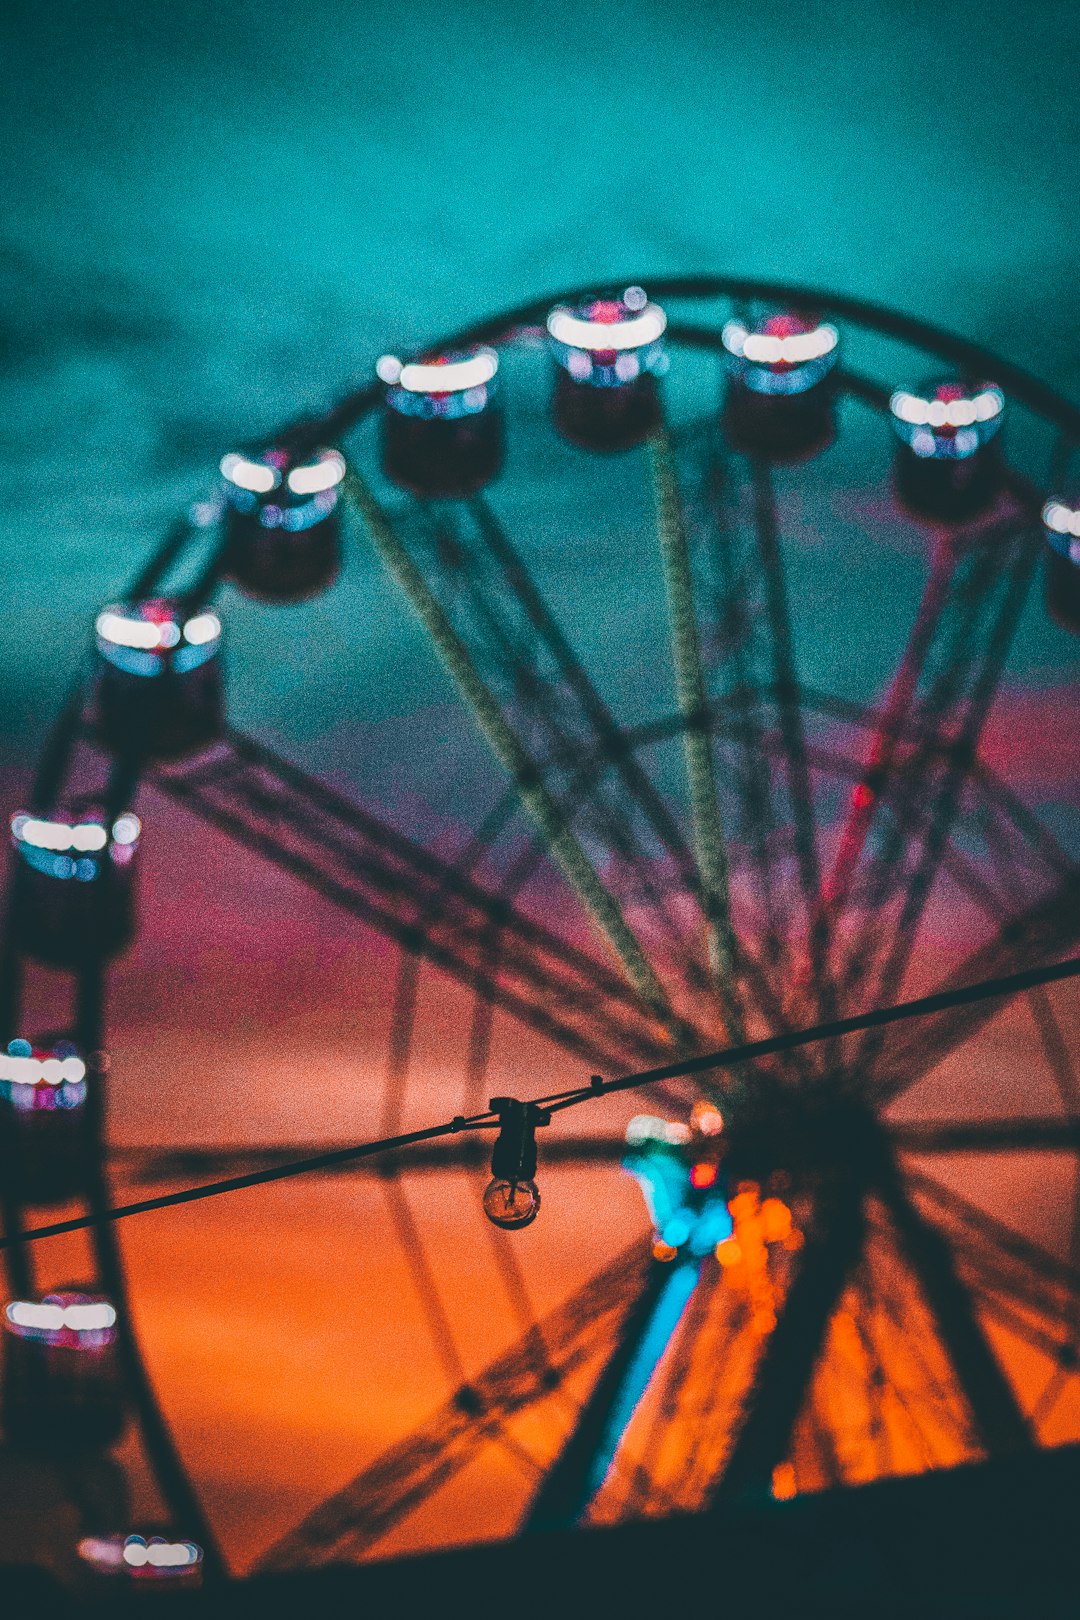 Ferris wheel photo spot Bondi Pavilion Australia